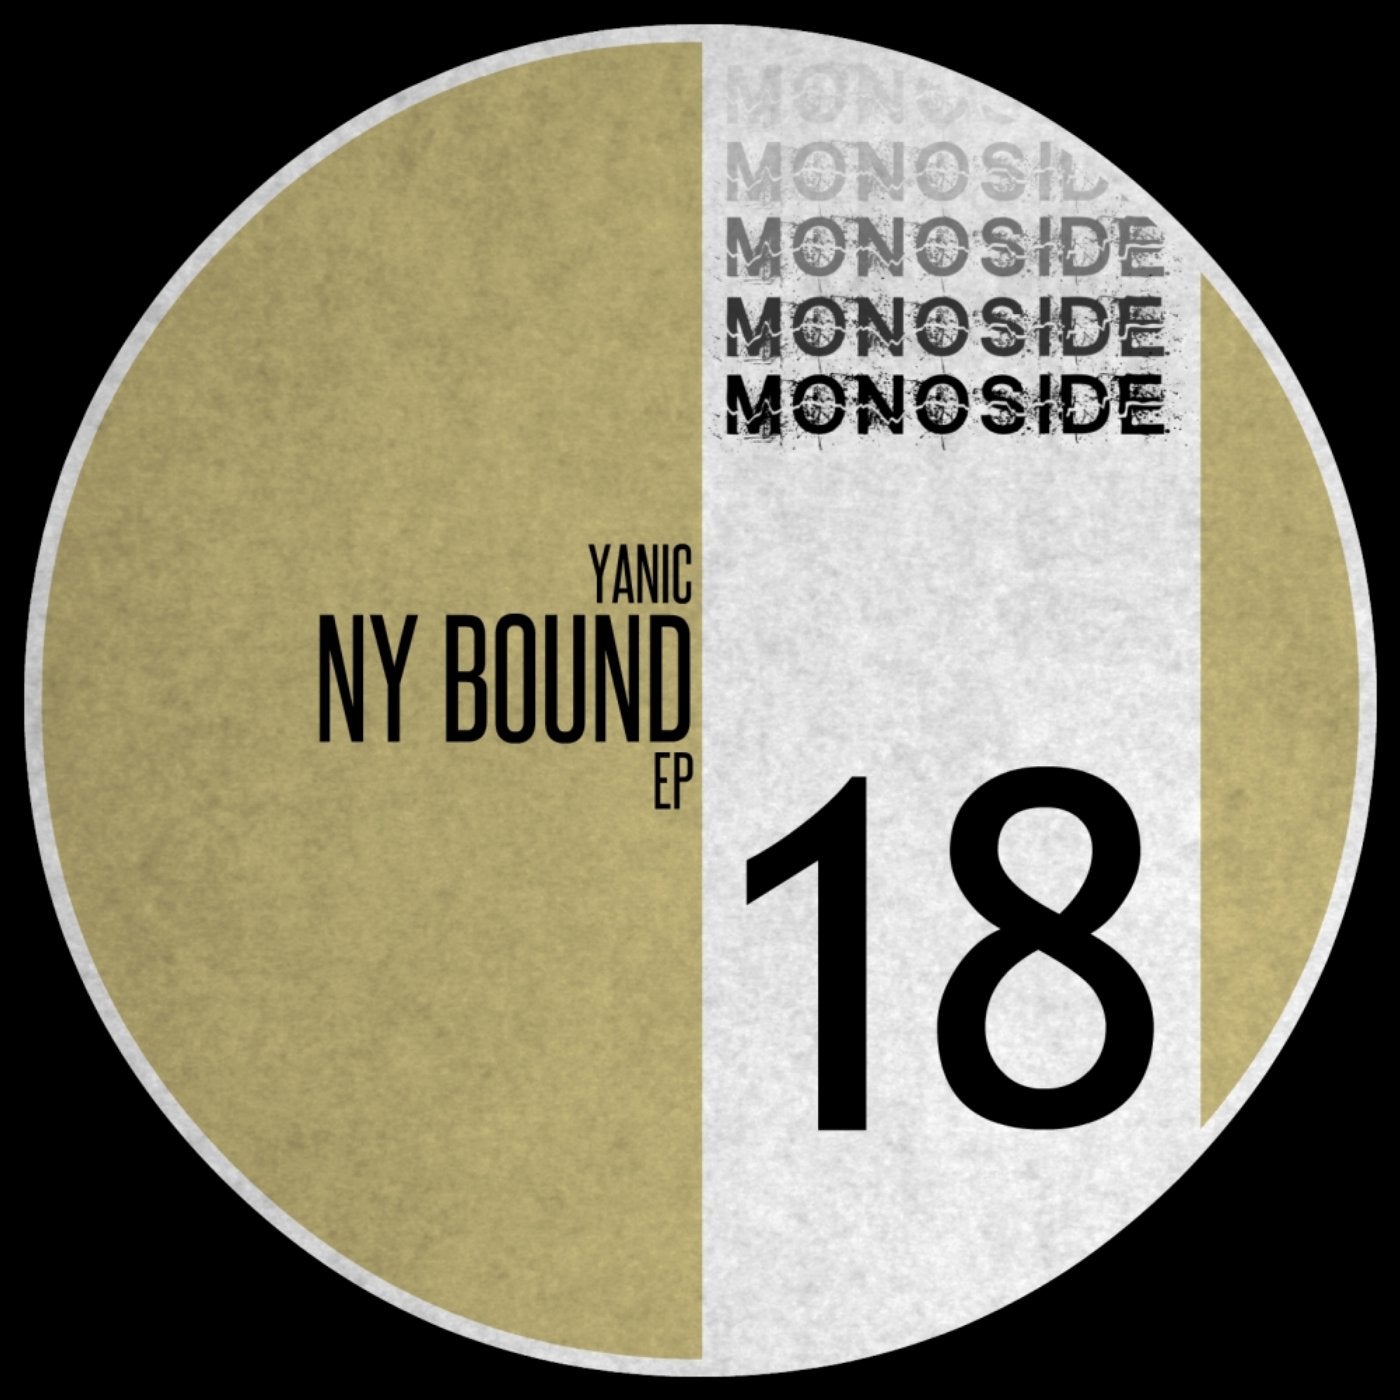 NY Bound EP